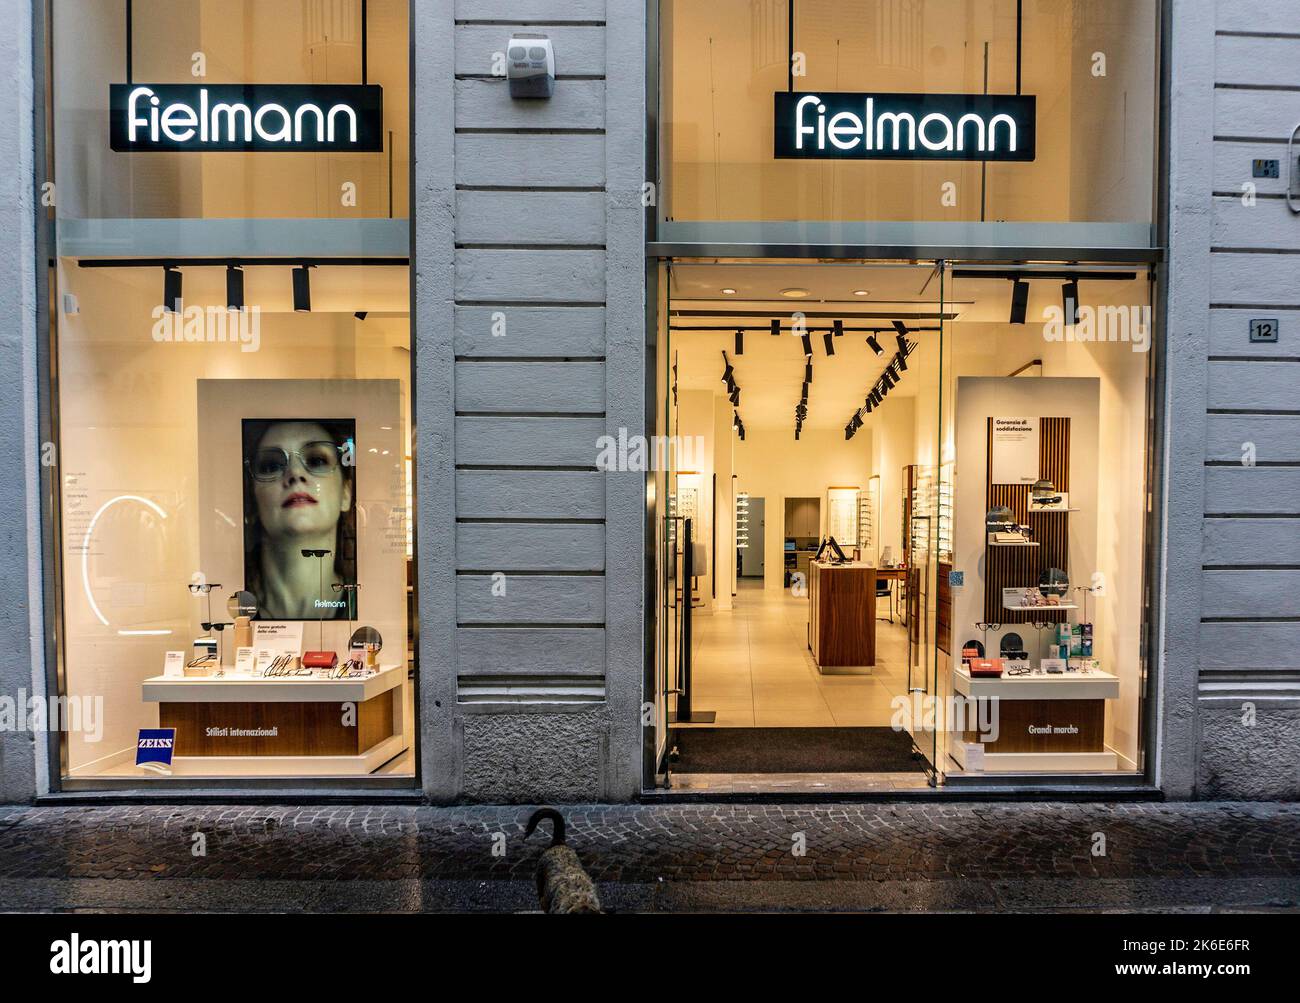 A Fielmann Eyewear Store on Via Roma, Lecco, Italy. Stock Photo